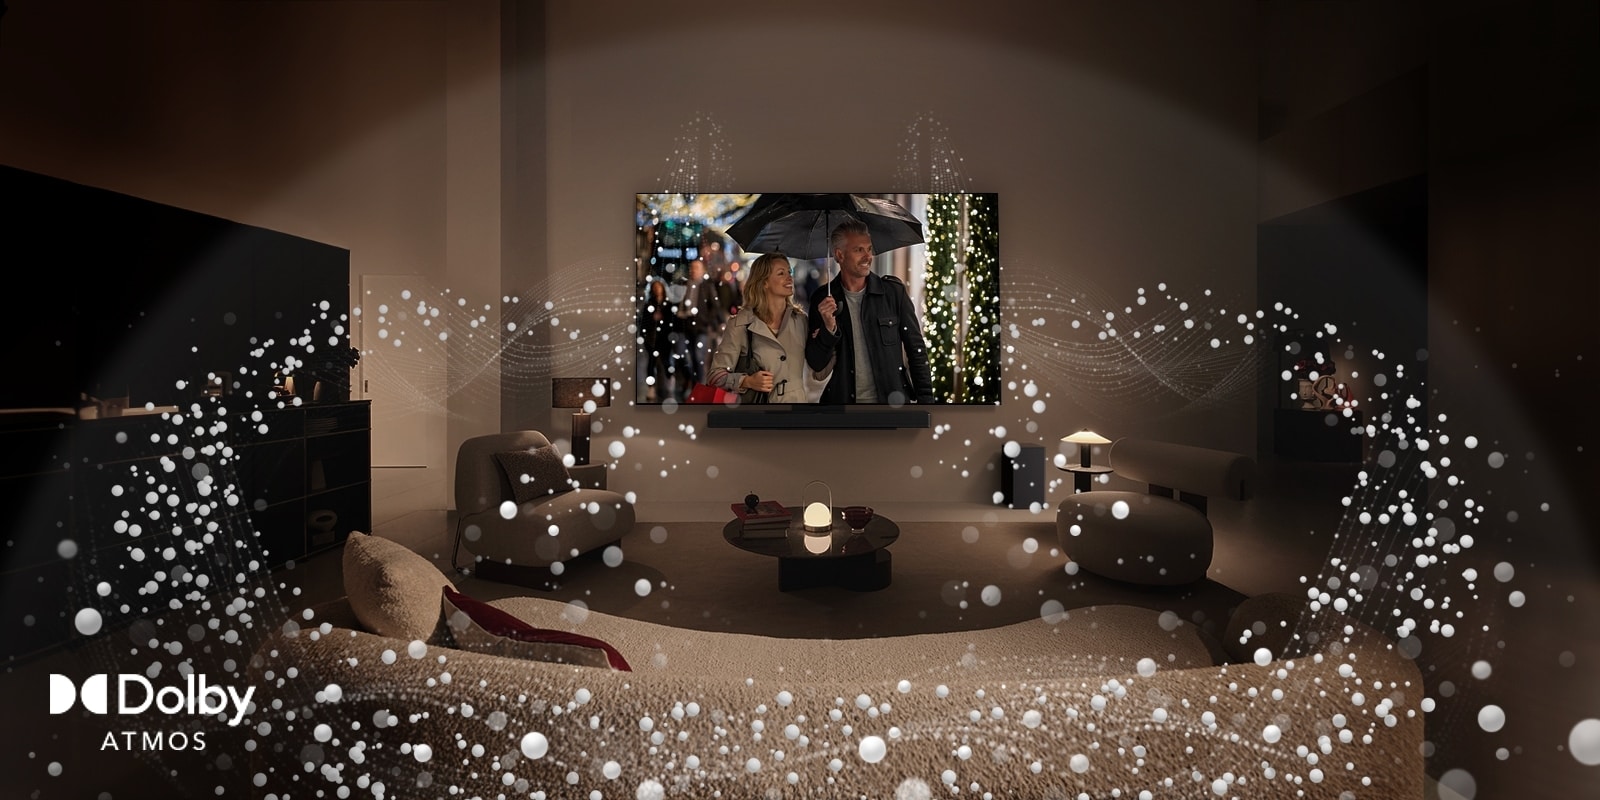 Prijeten, slabo osvetljen dnevni prostor, LG OLED TV prikazuje par, ki uporablja dežnik, sobo pa obdaja svetla krožna grafika. Logotip Dolby Atmos v spodnjem levem kotu.